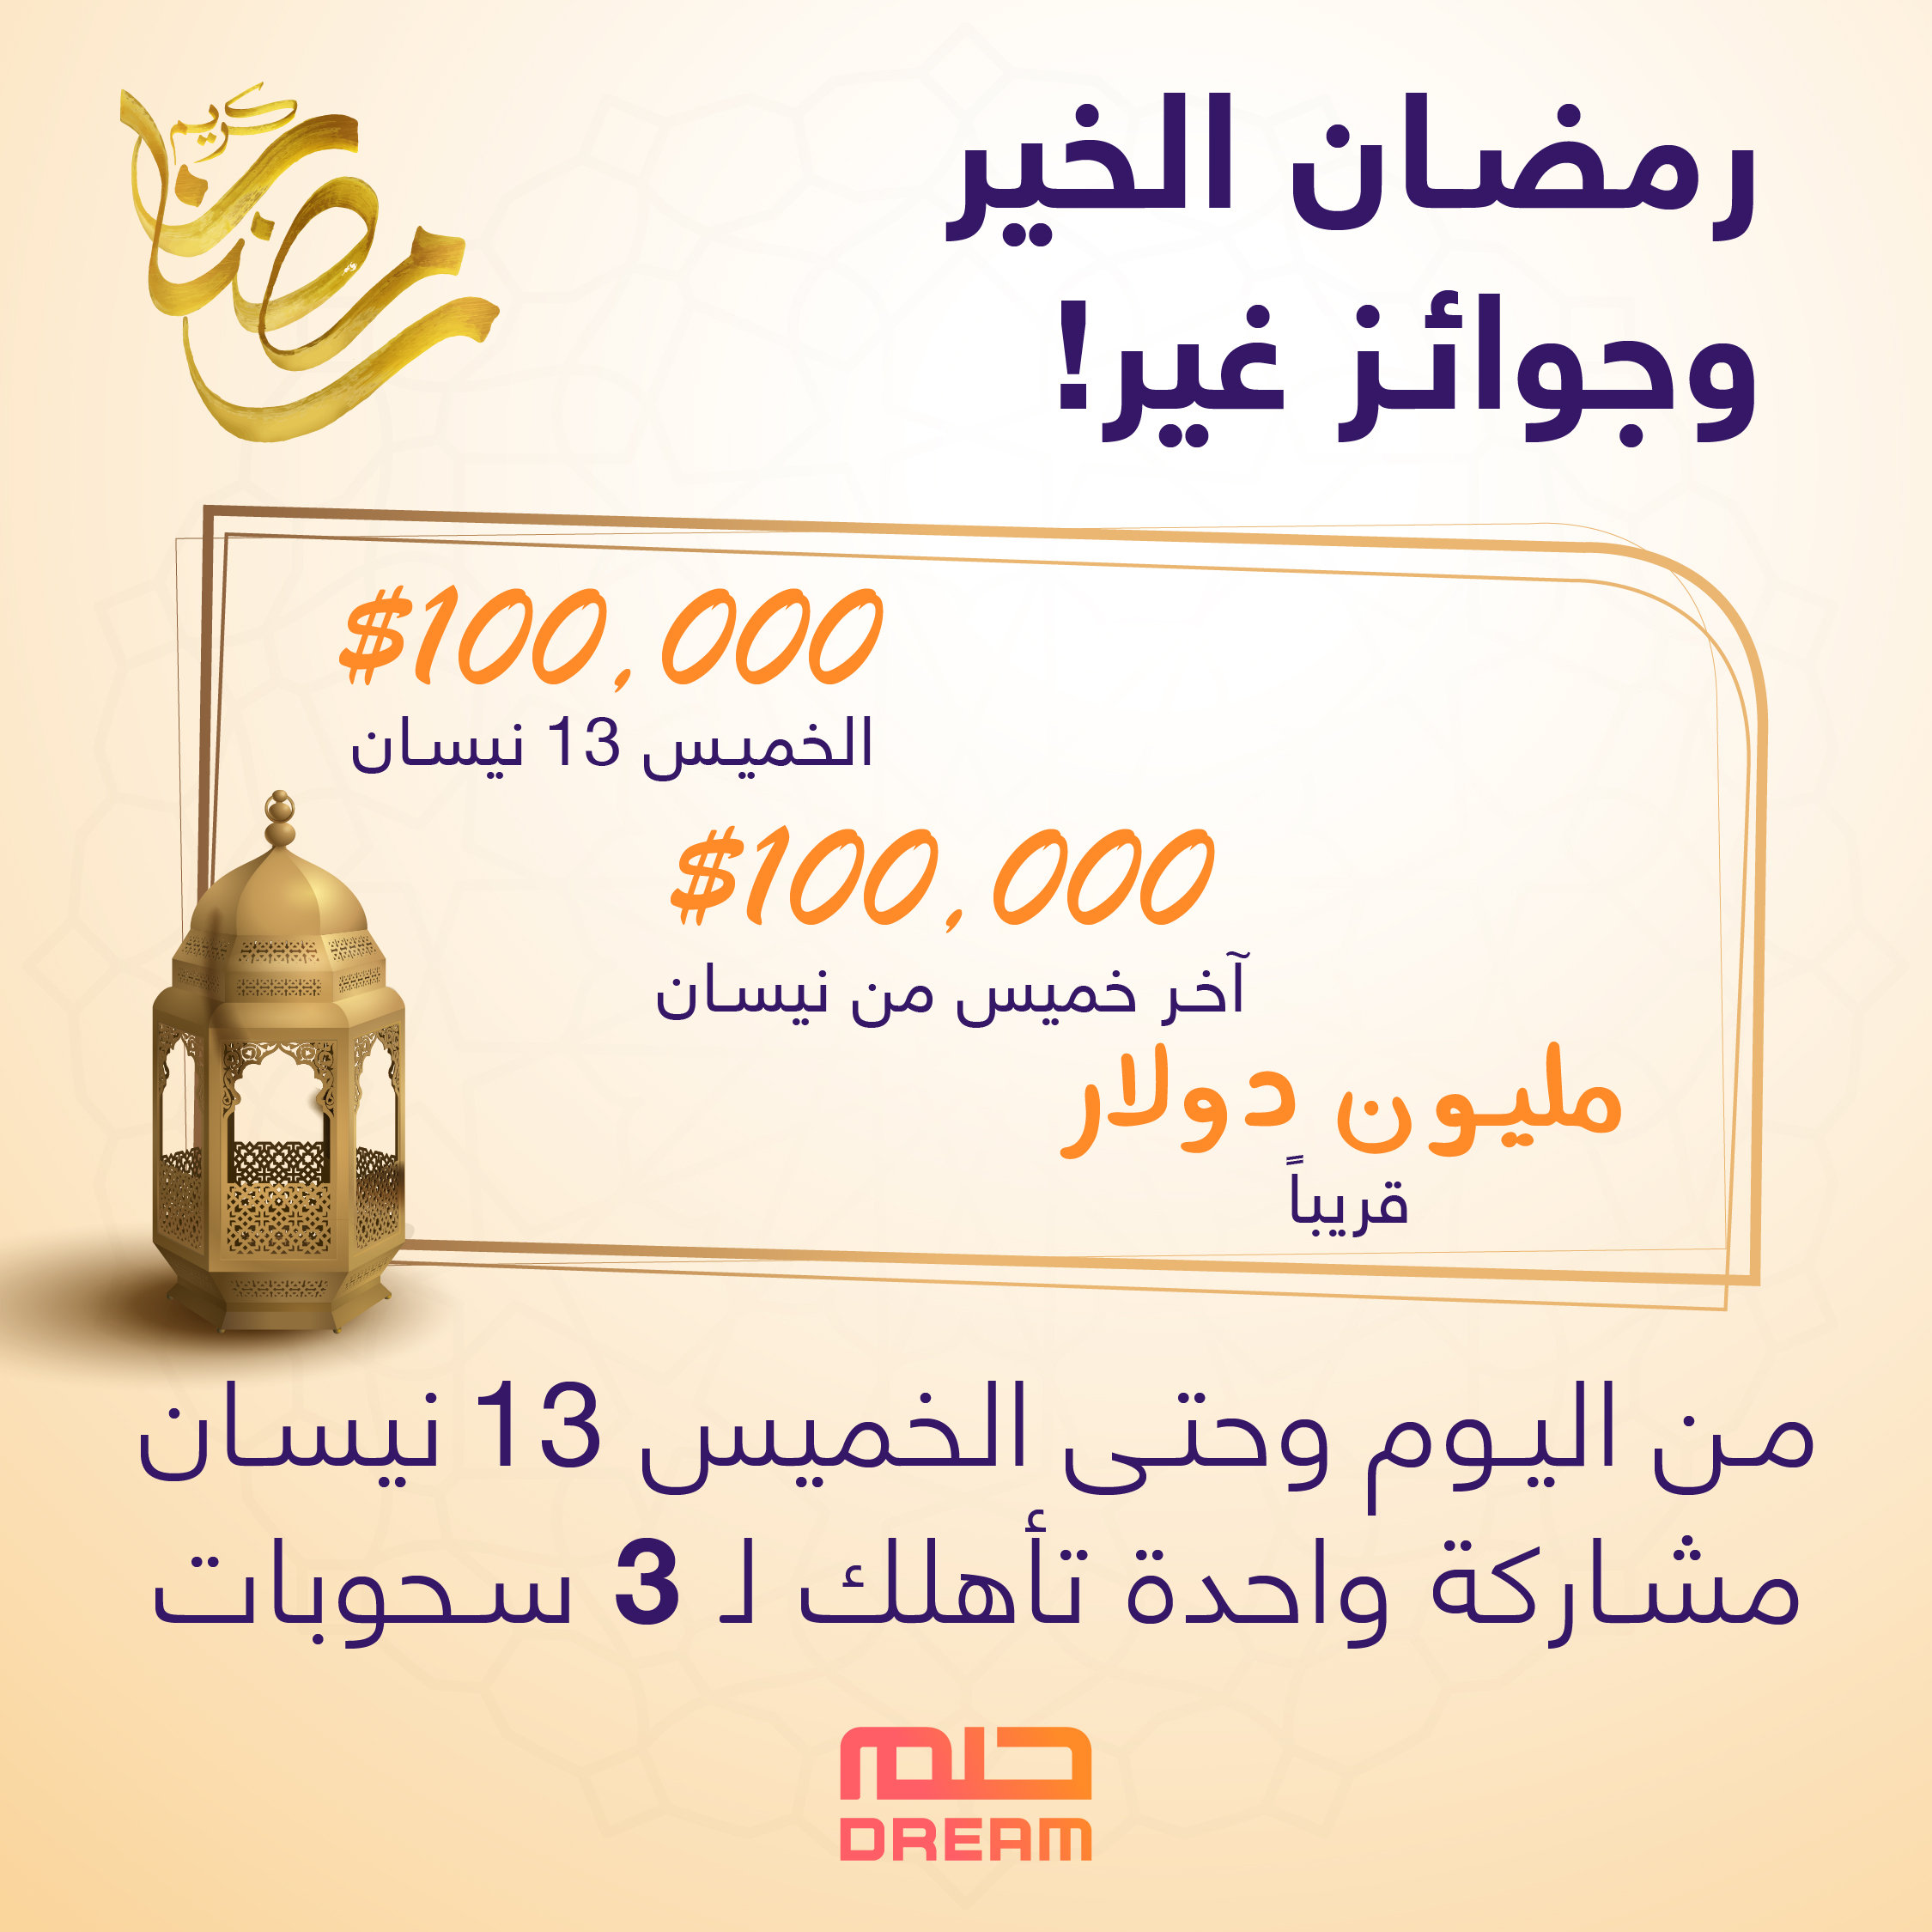 جائزة الحلم في رمضان| مسابقة الحلم تعلن جائزتها الرمضانية الإستثنائية وفرصة ذهبية لتكون مليونيراً برسالة sms فقط 1